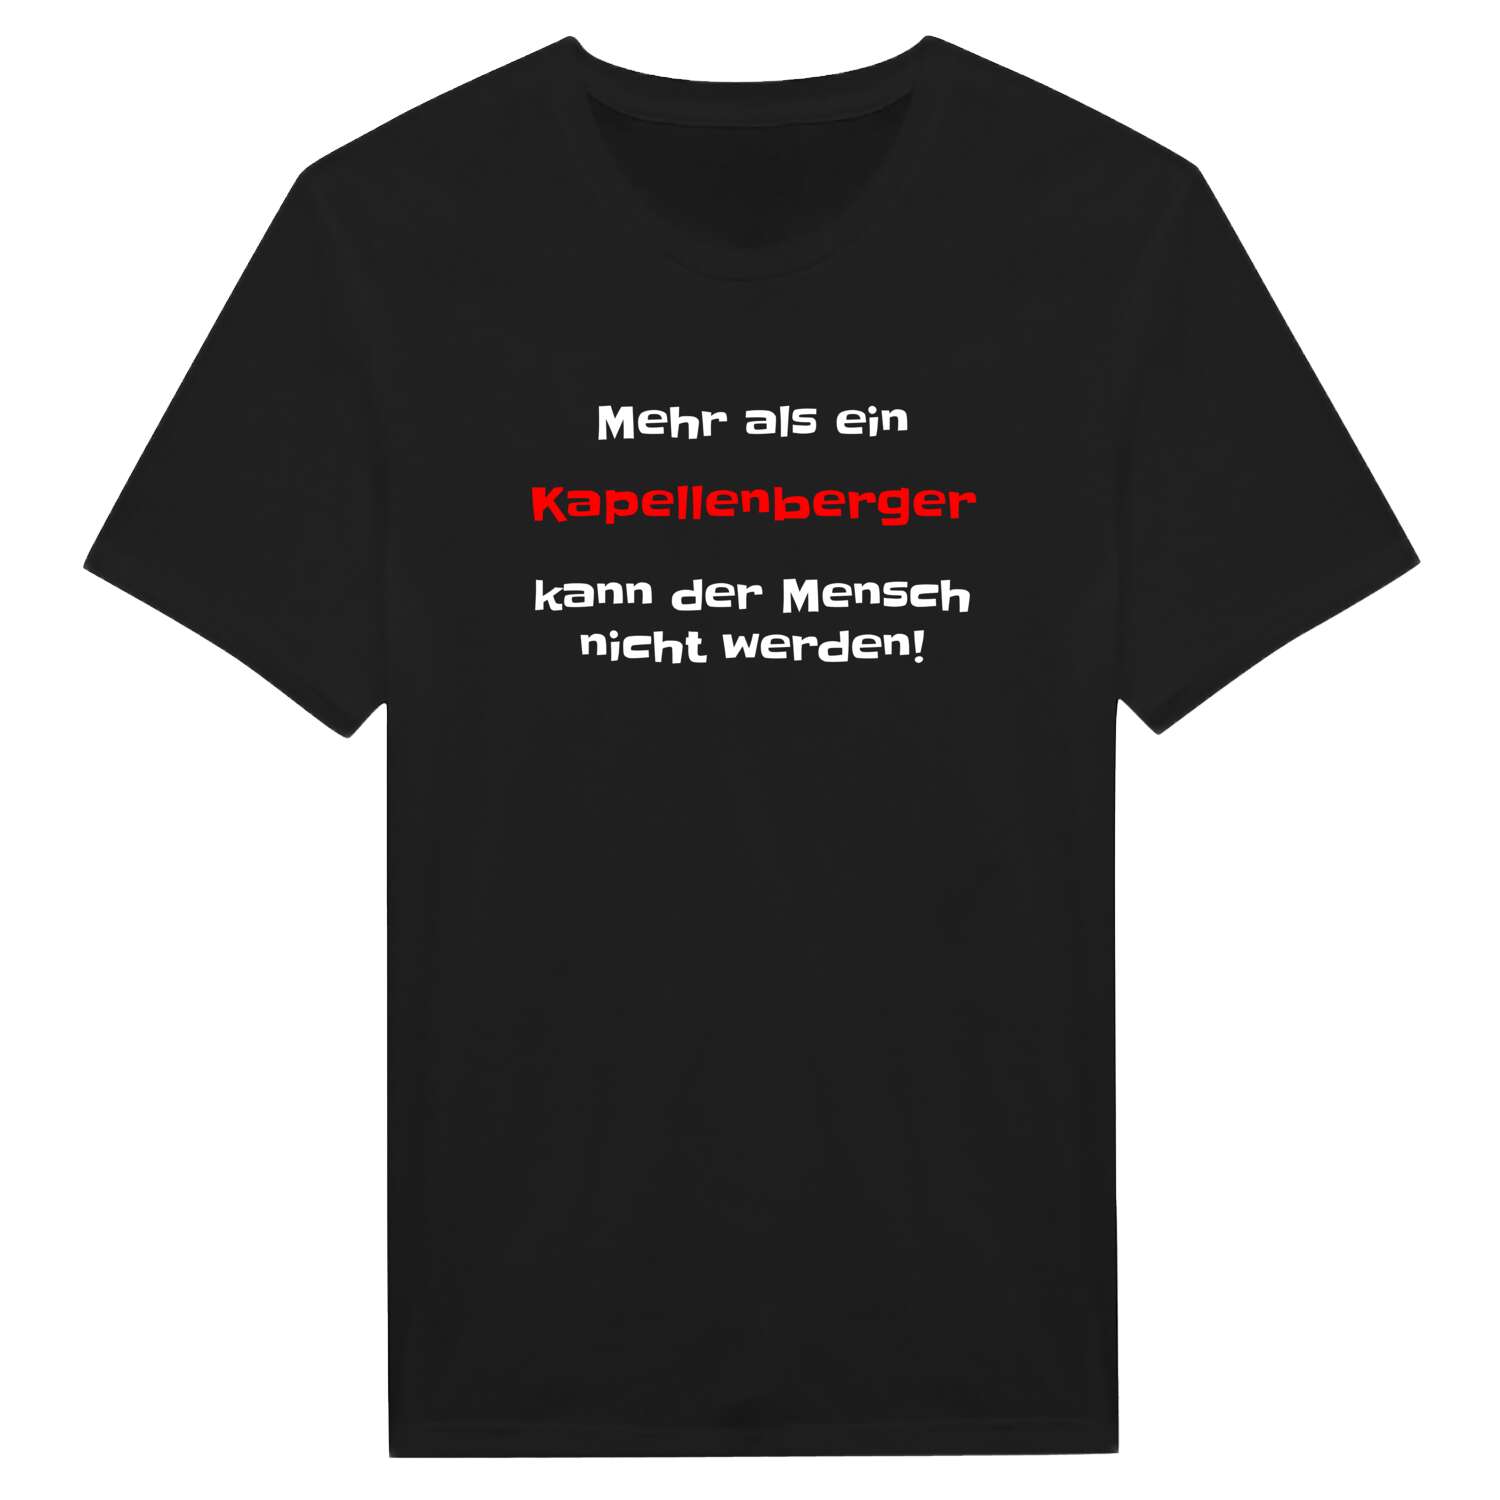 Kapellenberg T-Shirt »Mehr als ein«